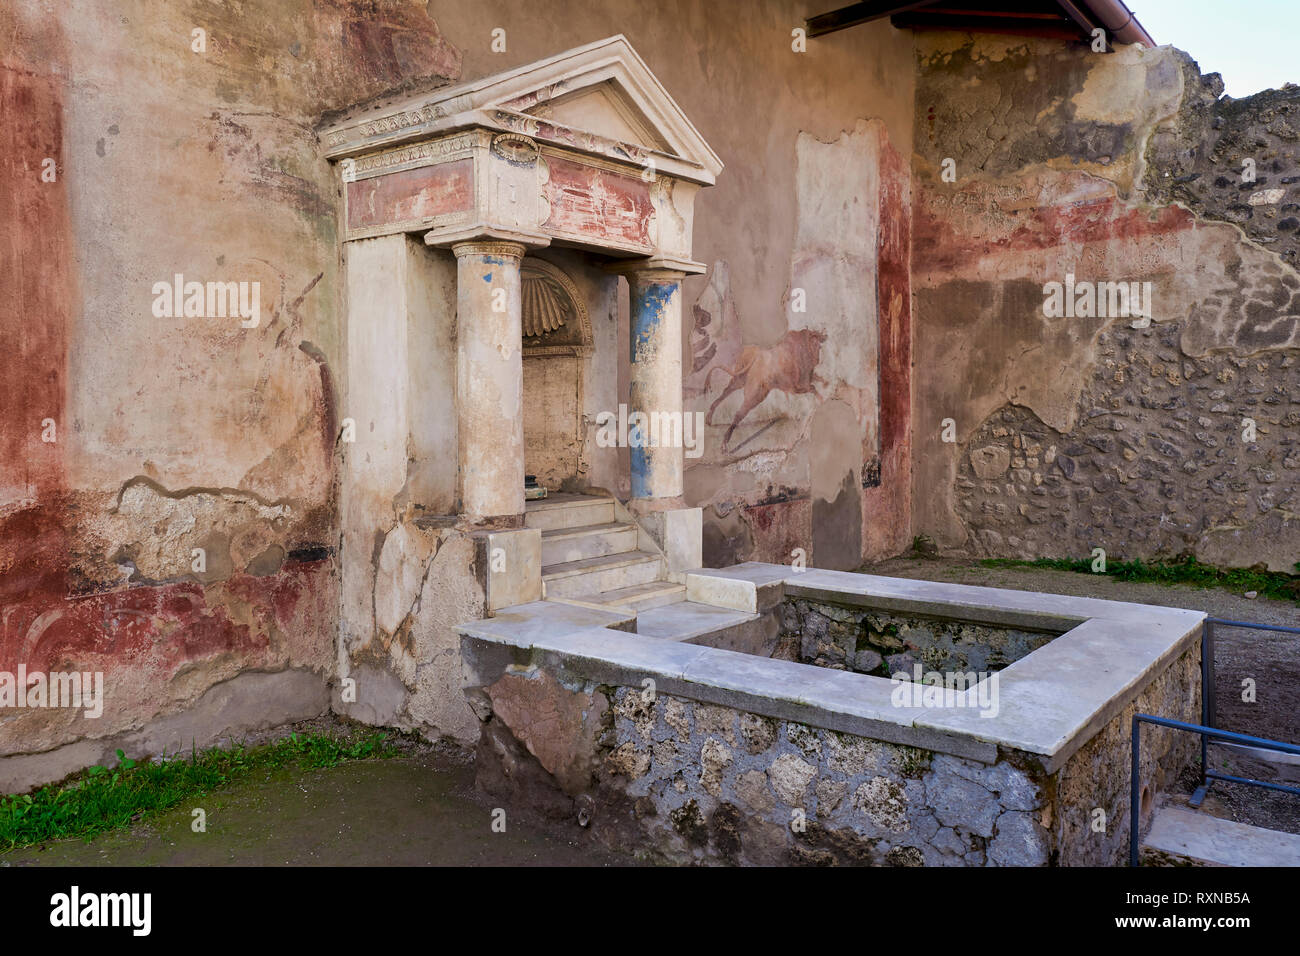 Neapel Kampanien Italien. Pompeji war eine antike römische Stadt in der Nähe von modernen Neapel in der Region Kampanien, im Gebiet der Gemeinde von Pompei. Stockfoto